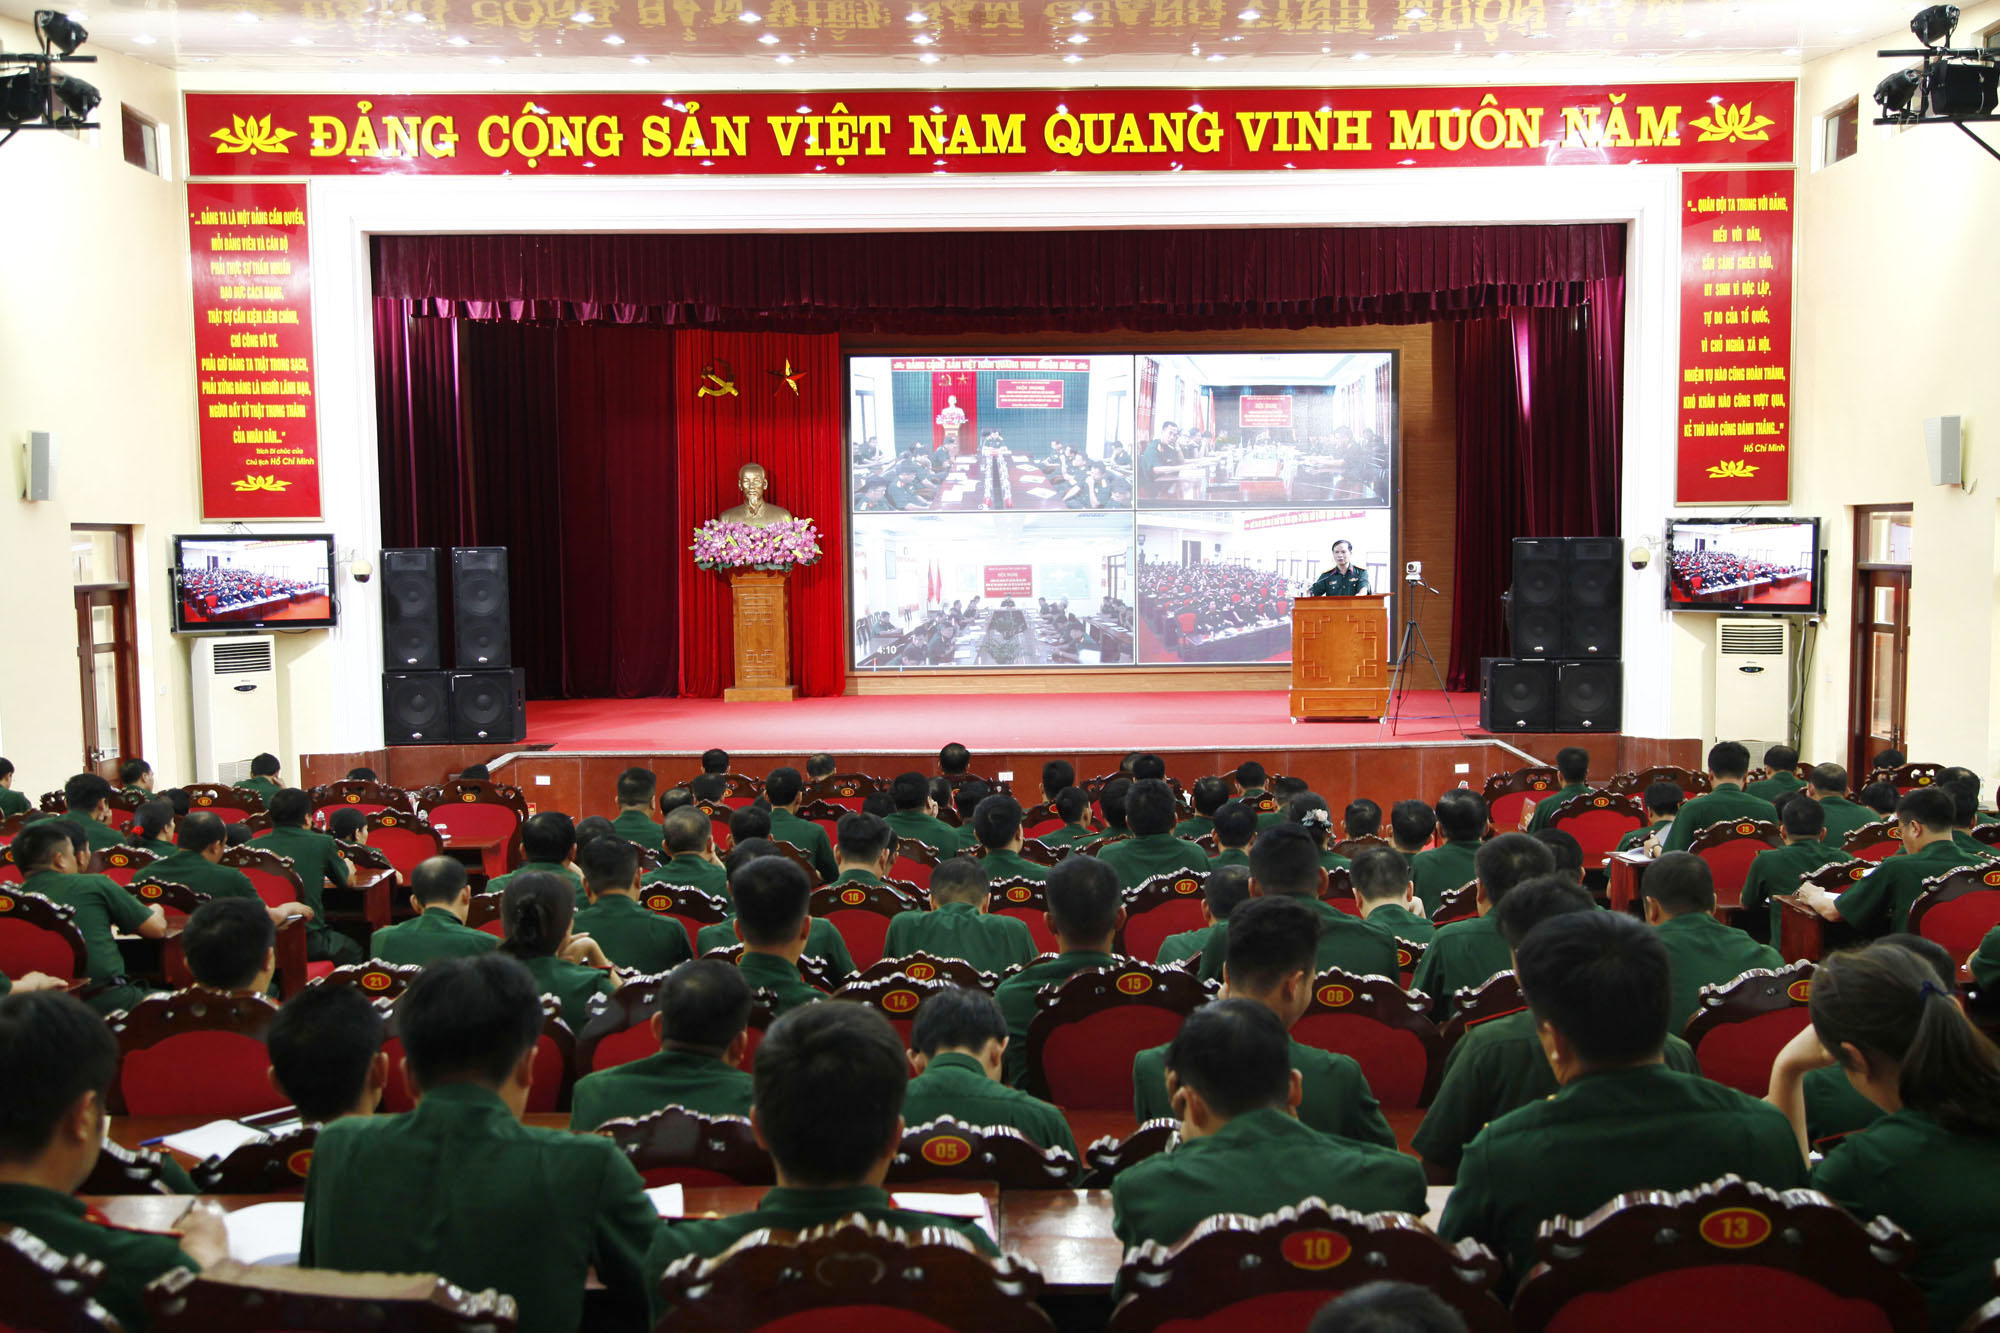 Từ ngày 12/10, Đảng ủy Quân sự tỉnh đã tổ chức Hội nghị trực tuyến thông báo kết quả Đại hội Đại biểu Đảng bộ tỉnh Quảng Ninh lần thứ XV và Đại hội Đại biểu Đảng bộ Quân đội lần thứ XI, nhiệm kỳ 2020-2025. Ảnh: Văn Đảm (Bộ CHQS tỉnh)